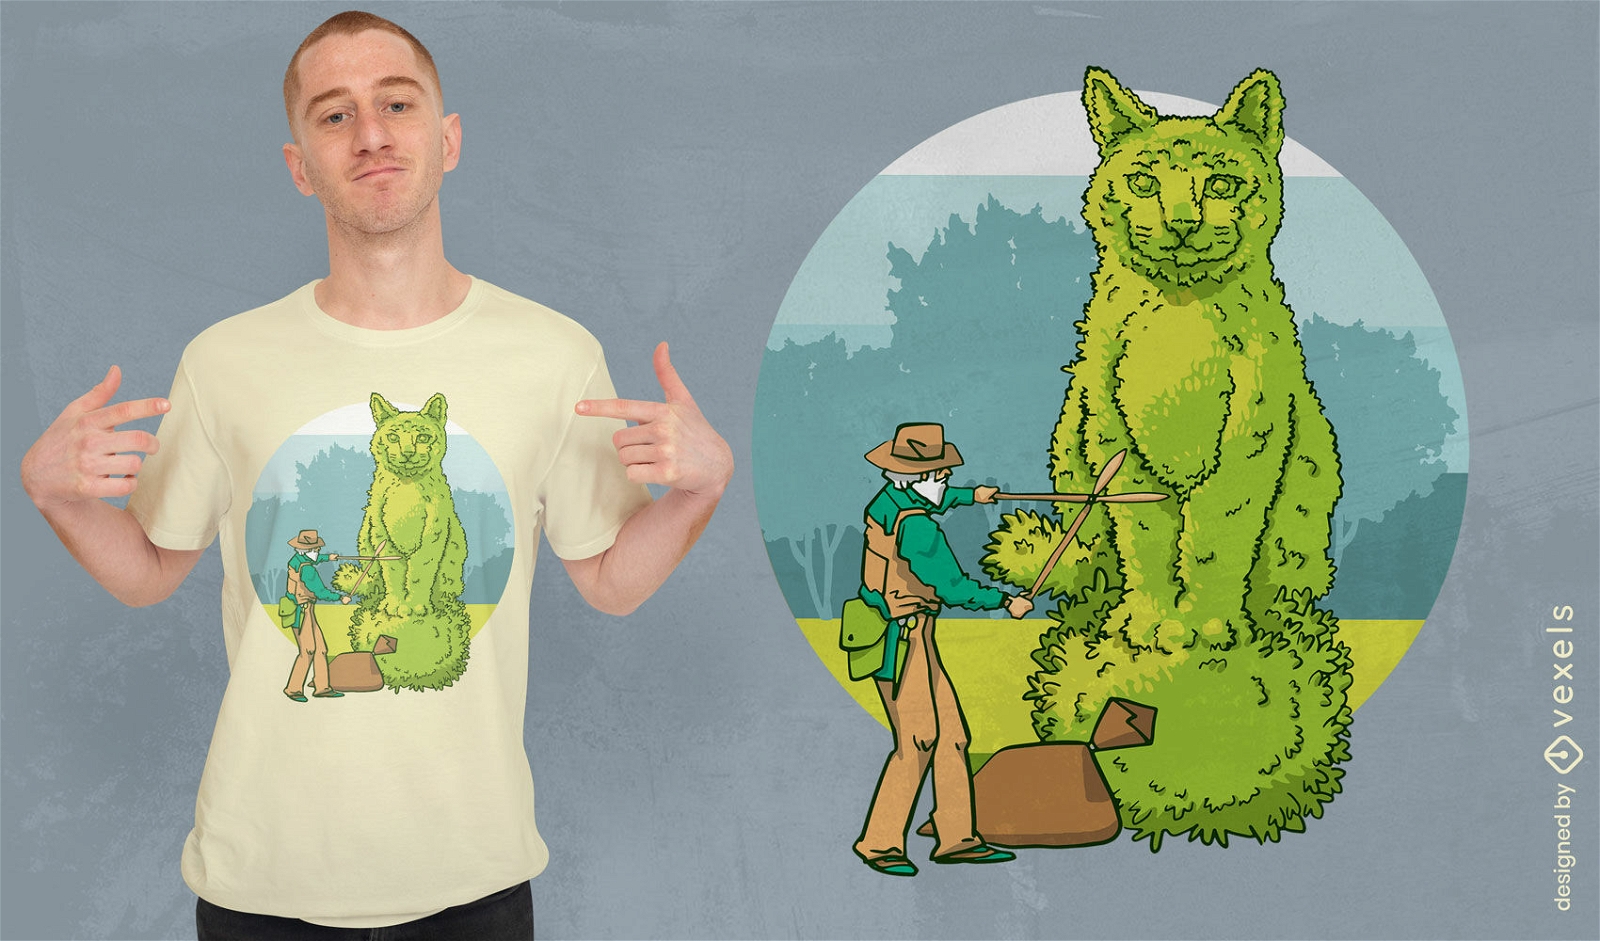 Cat topiary gardening t-shirt design